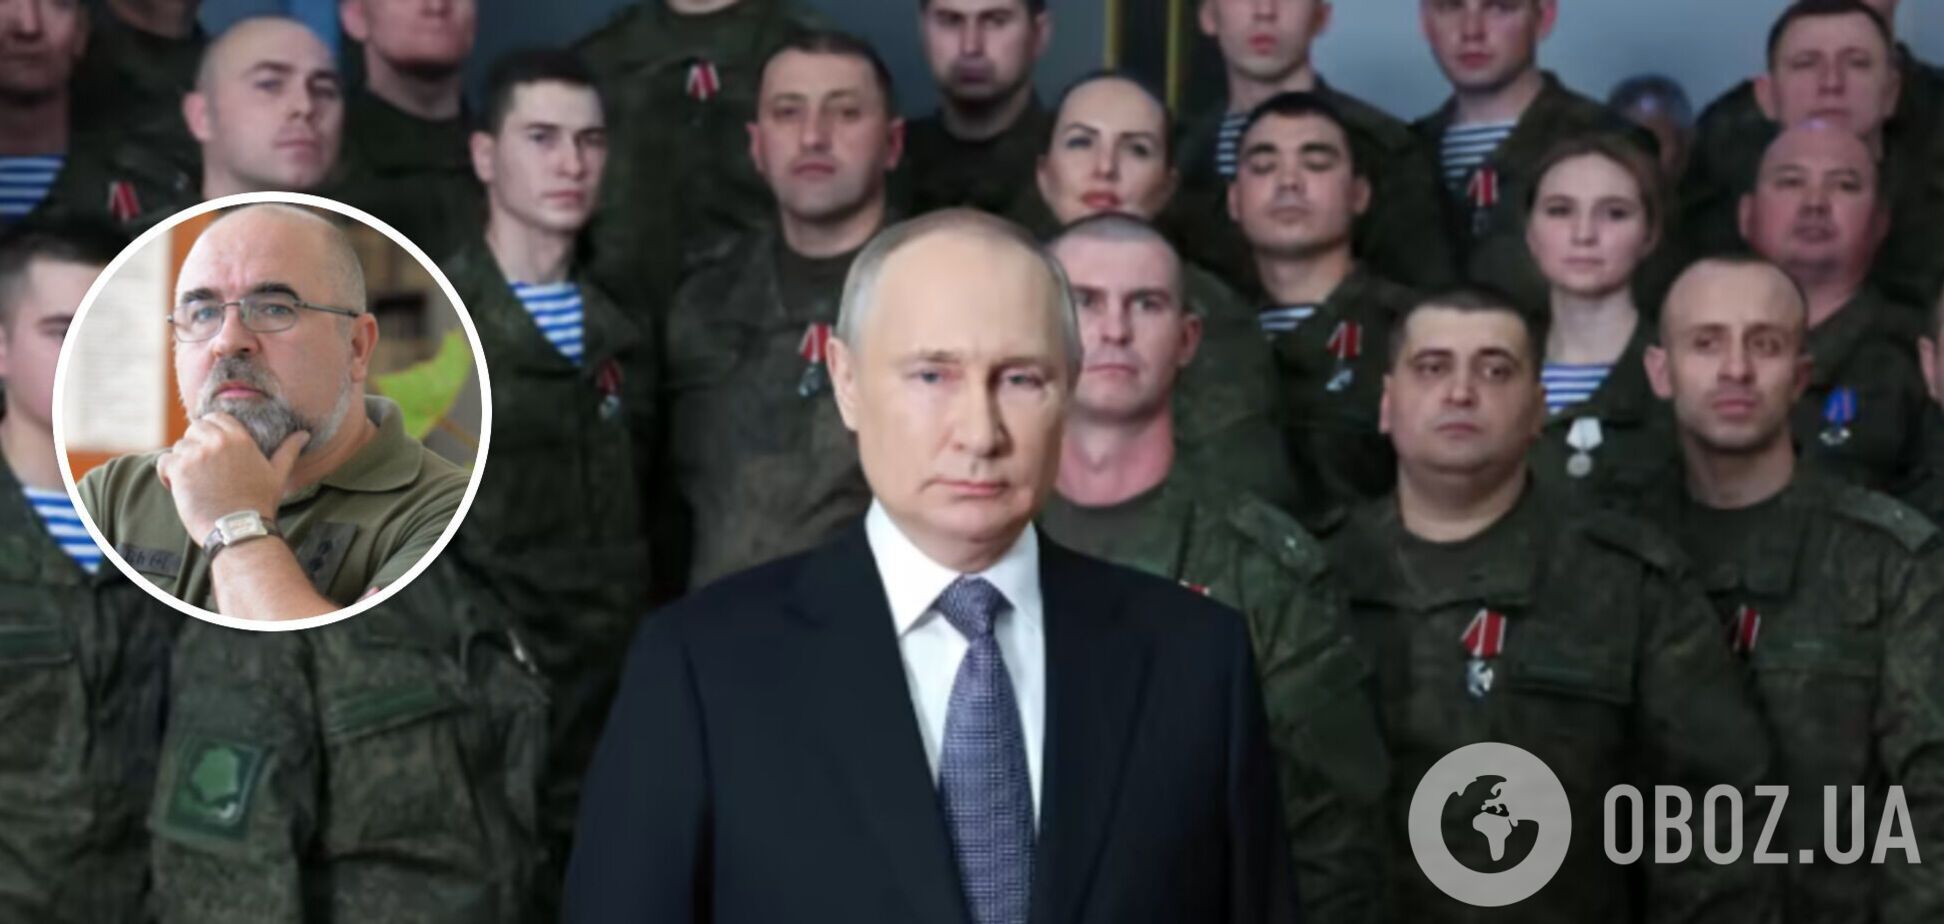 Вероятность новой волны мобилизации очень высока: полковник Черник спрогнозировал решения Путина и возможность бунта после выборов